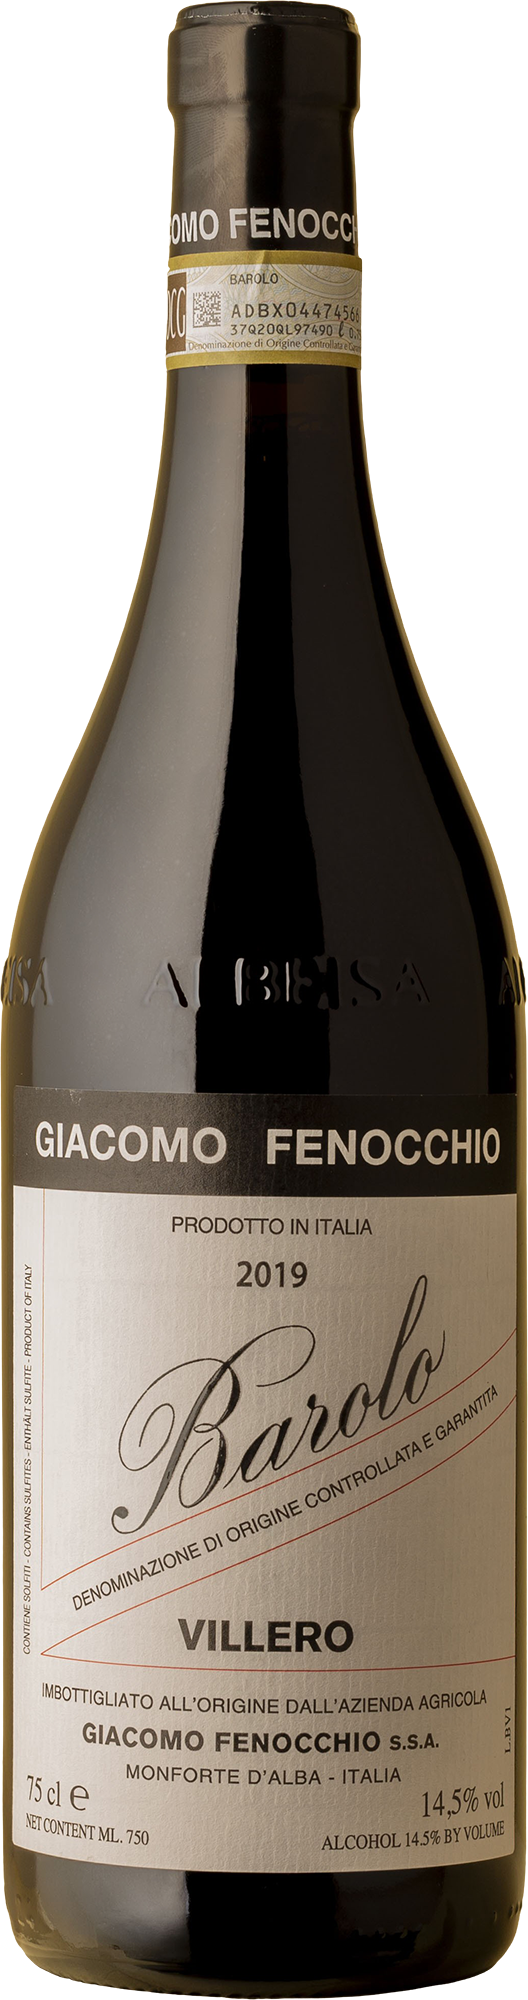 Giacomo Fenocchio - Barolo Villero Nebbiolo 2019 Red Wine